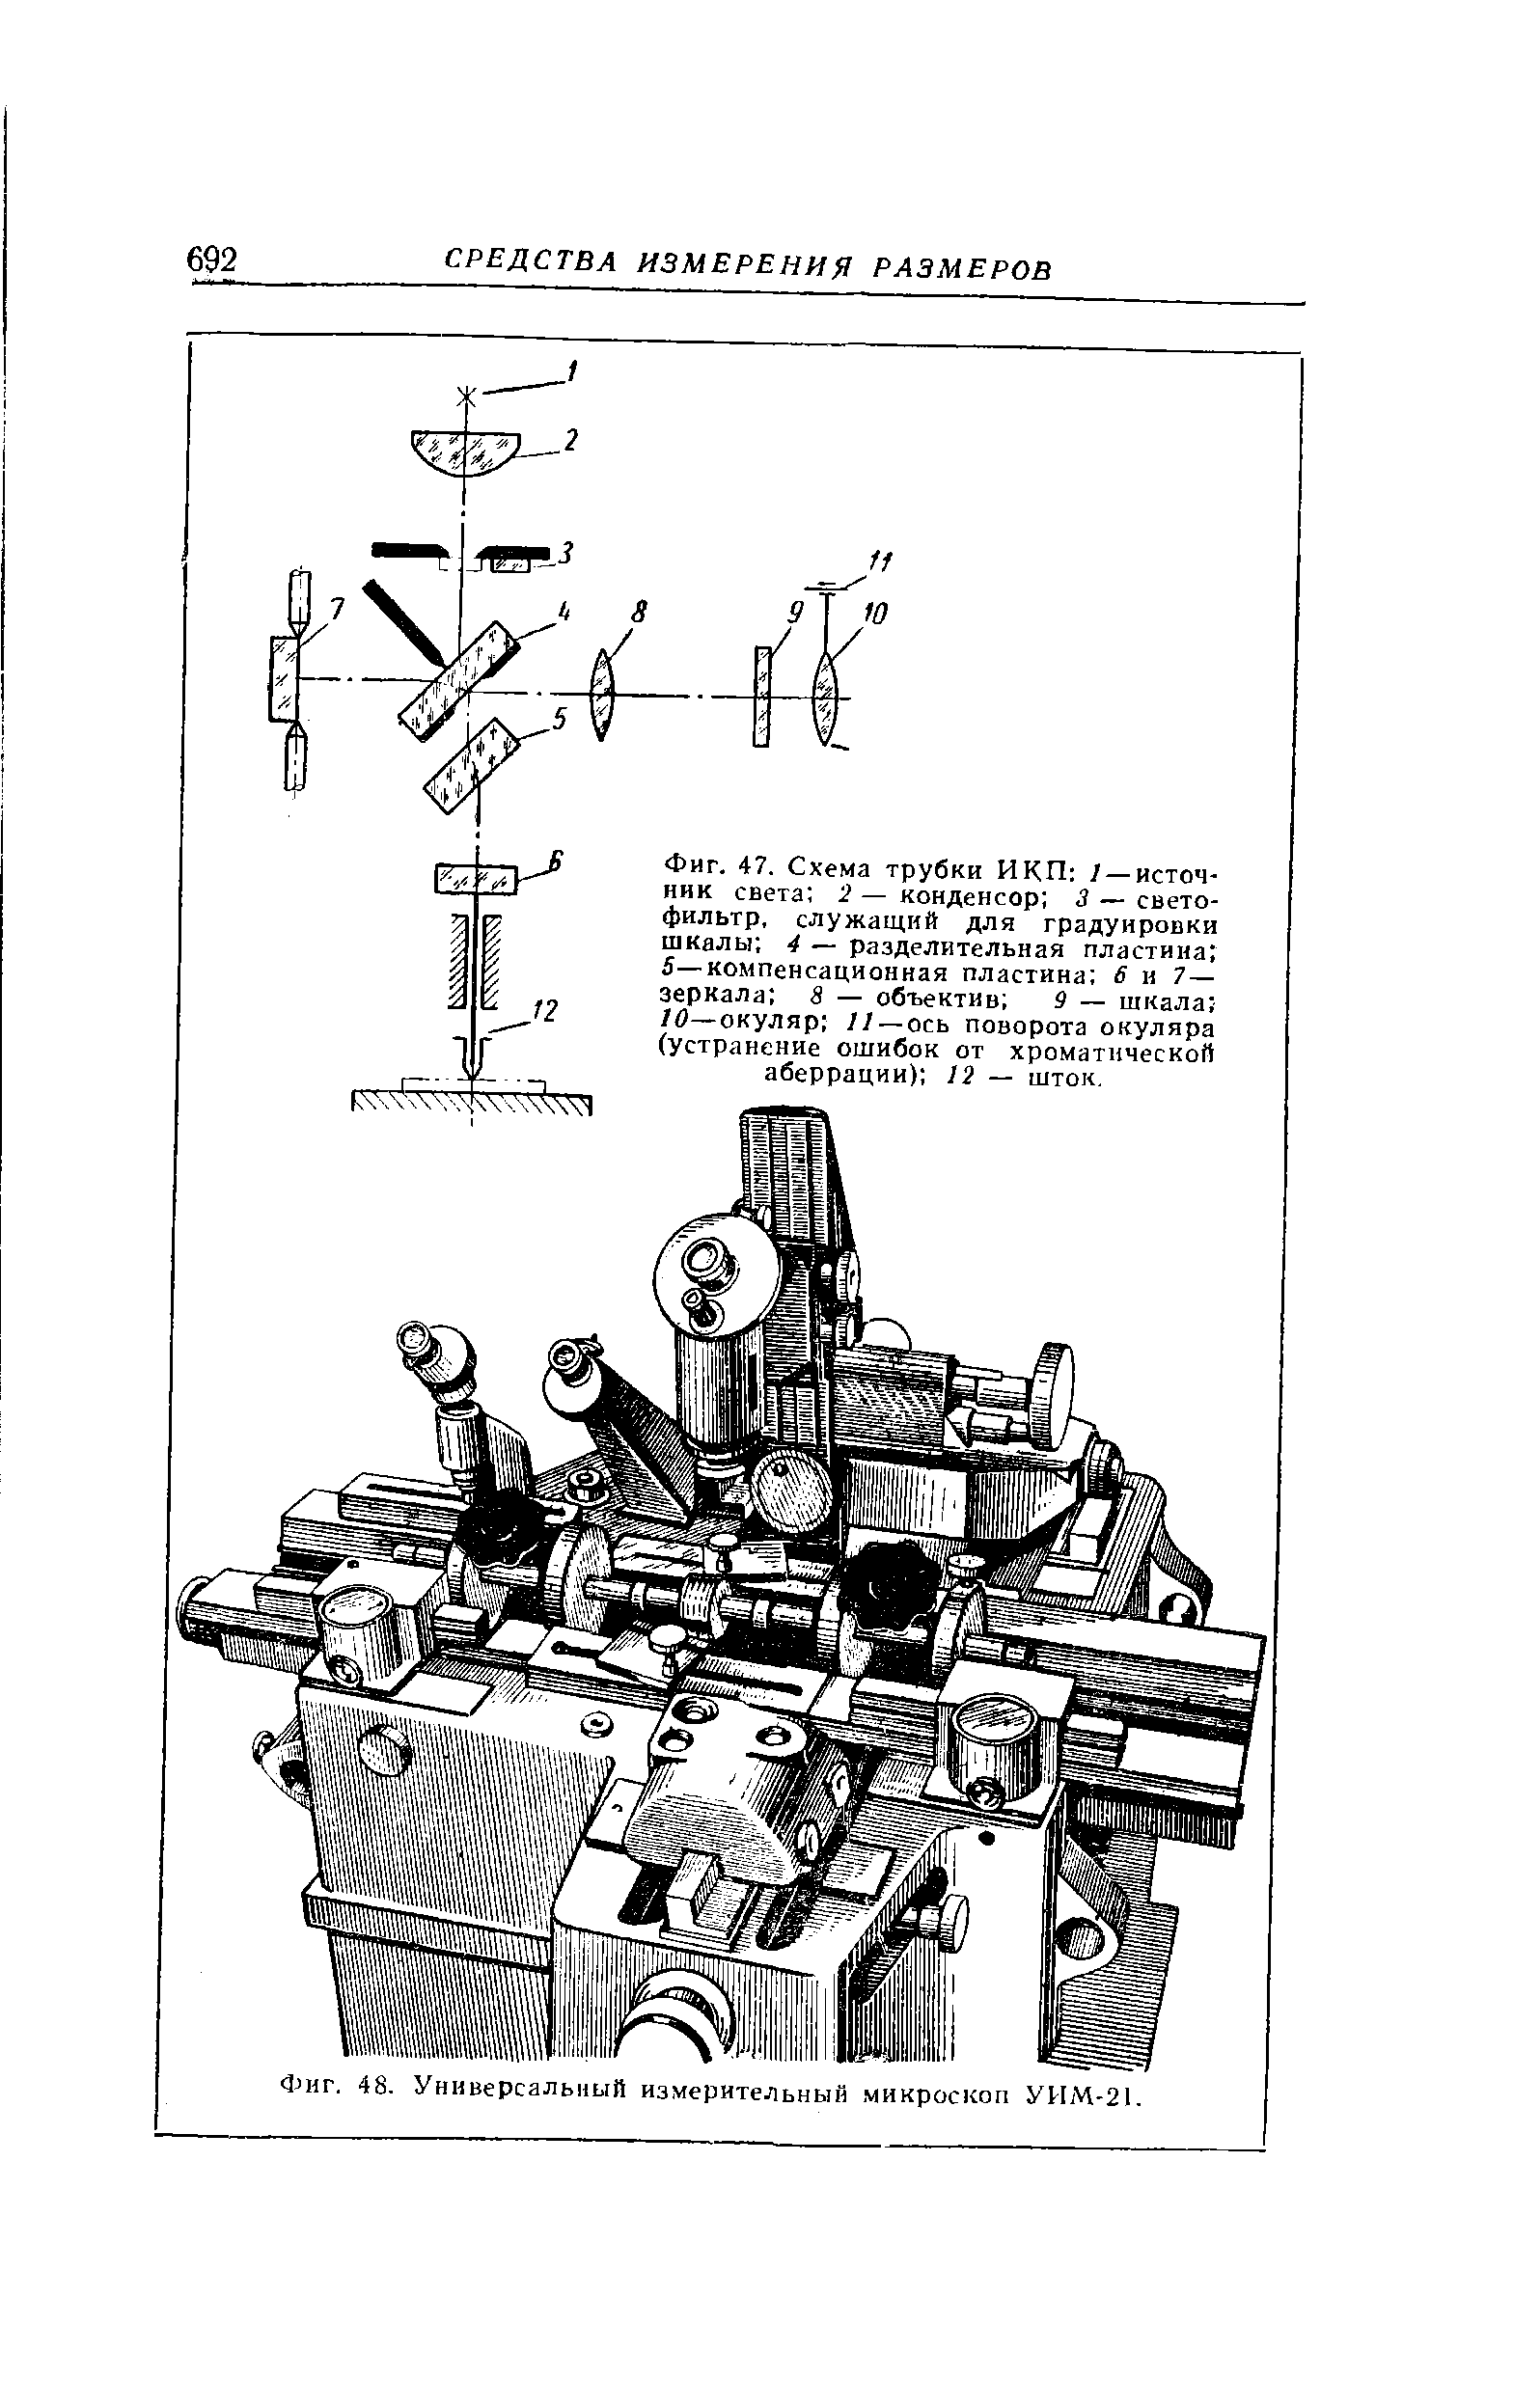 Фиг. 48. Универсальный измерительный микроскоп УИМ-21.
